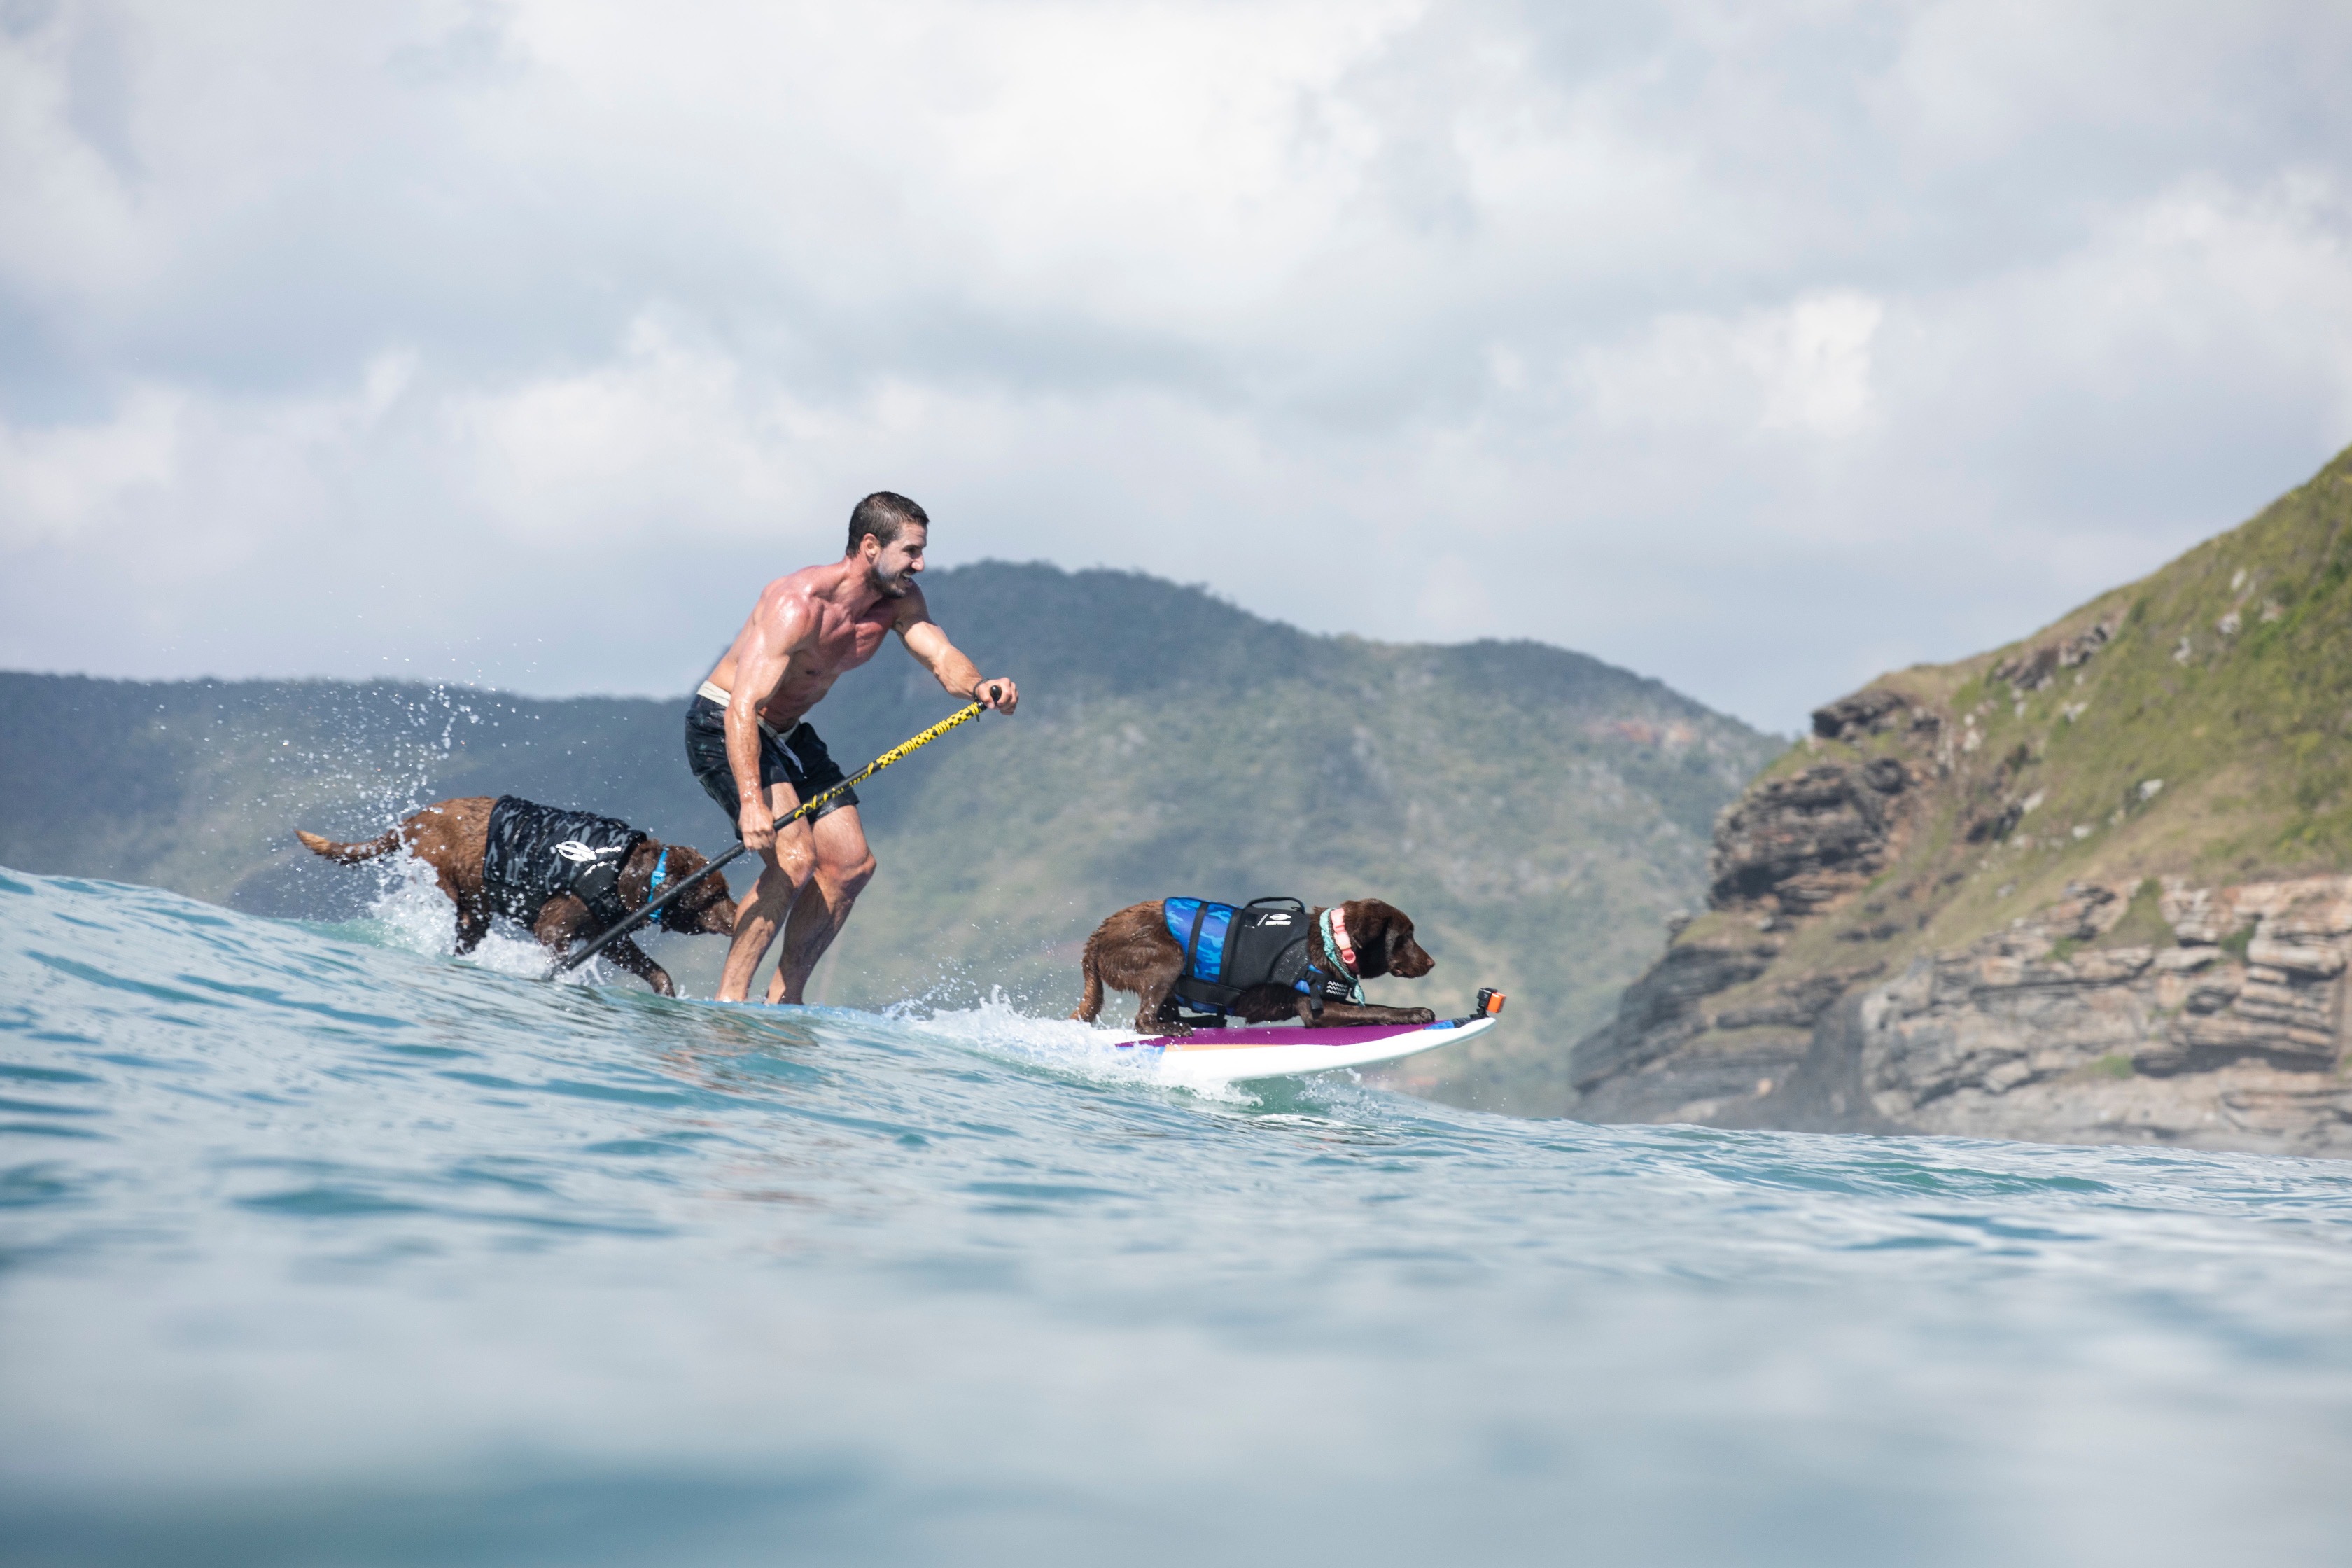 Competidor surfará com dois cães na mesma prancha.